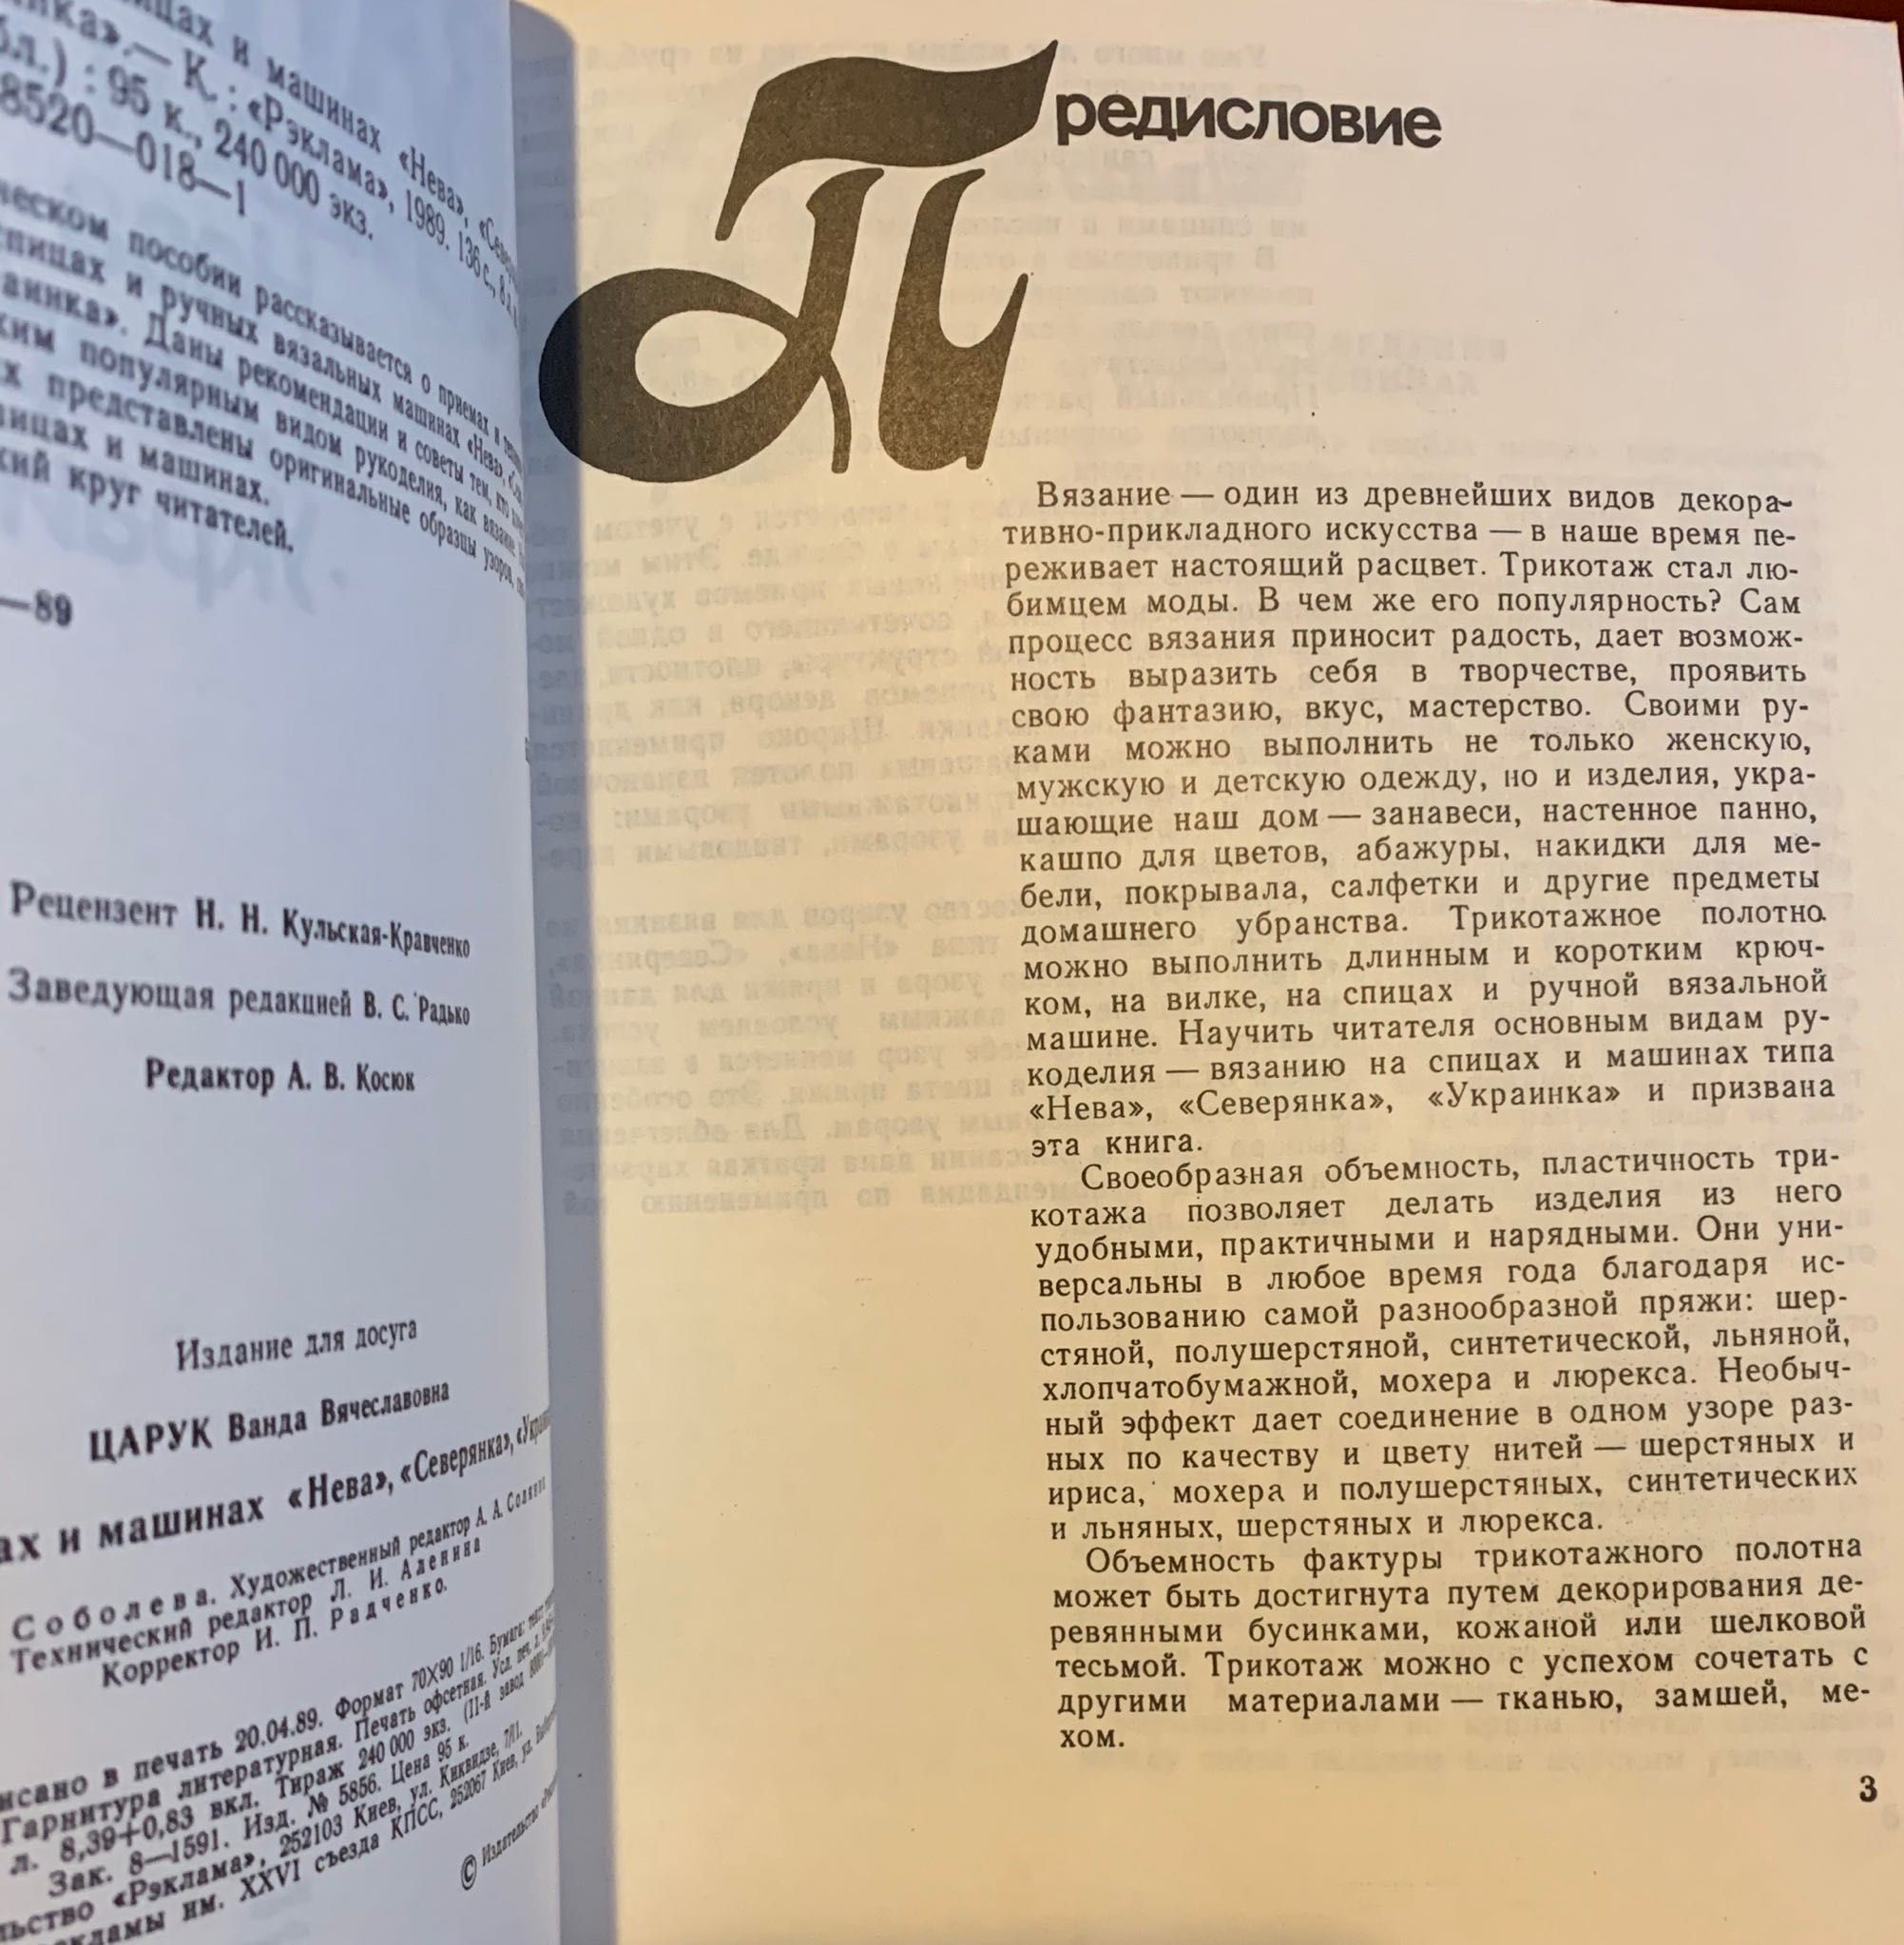 Вязание на спицах и машинах. Киев 1989. Практическое пособие